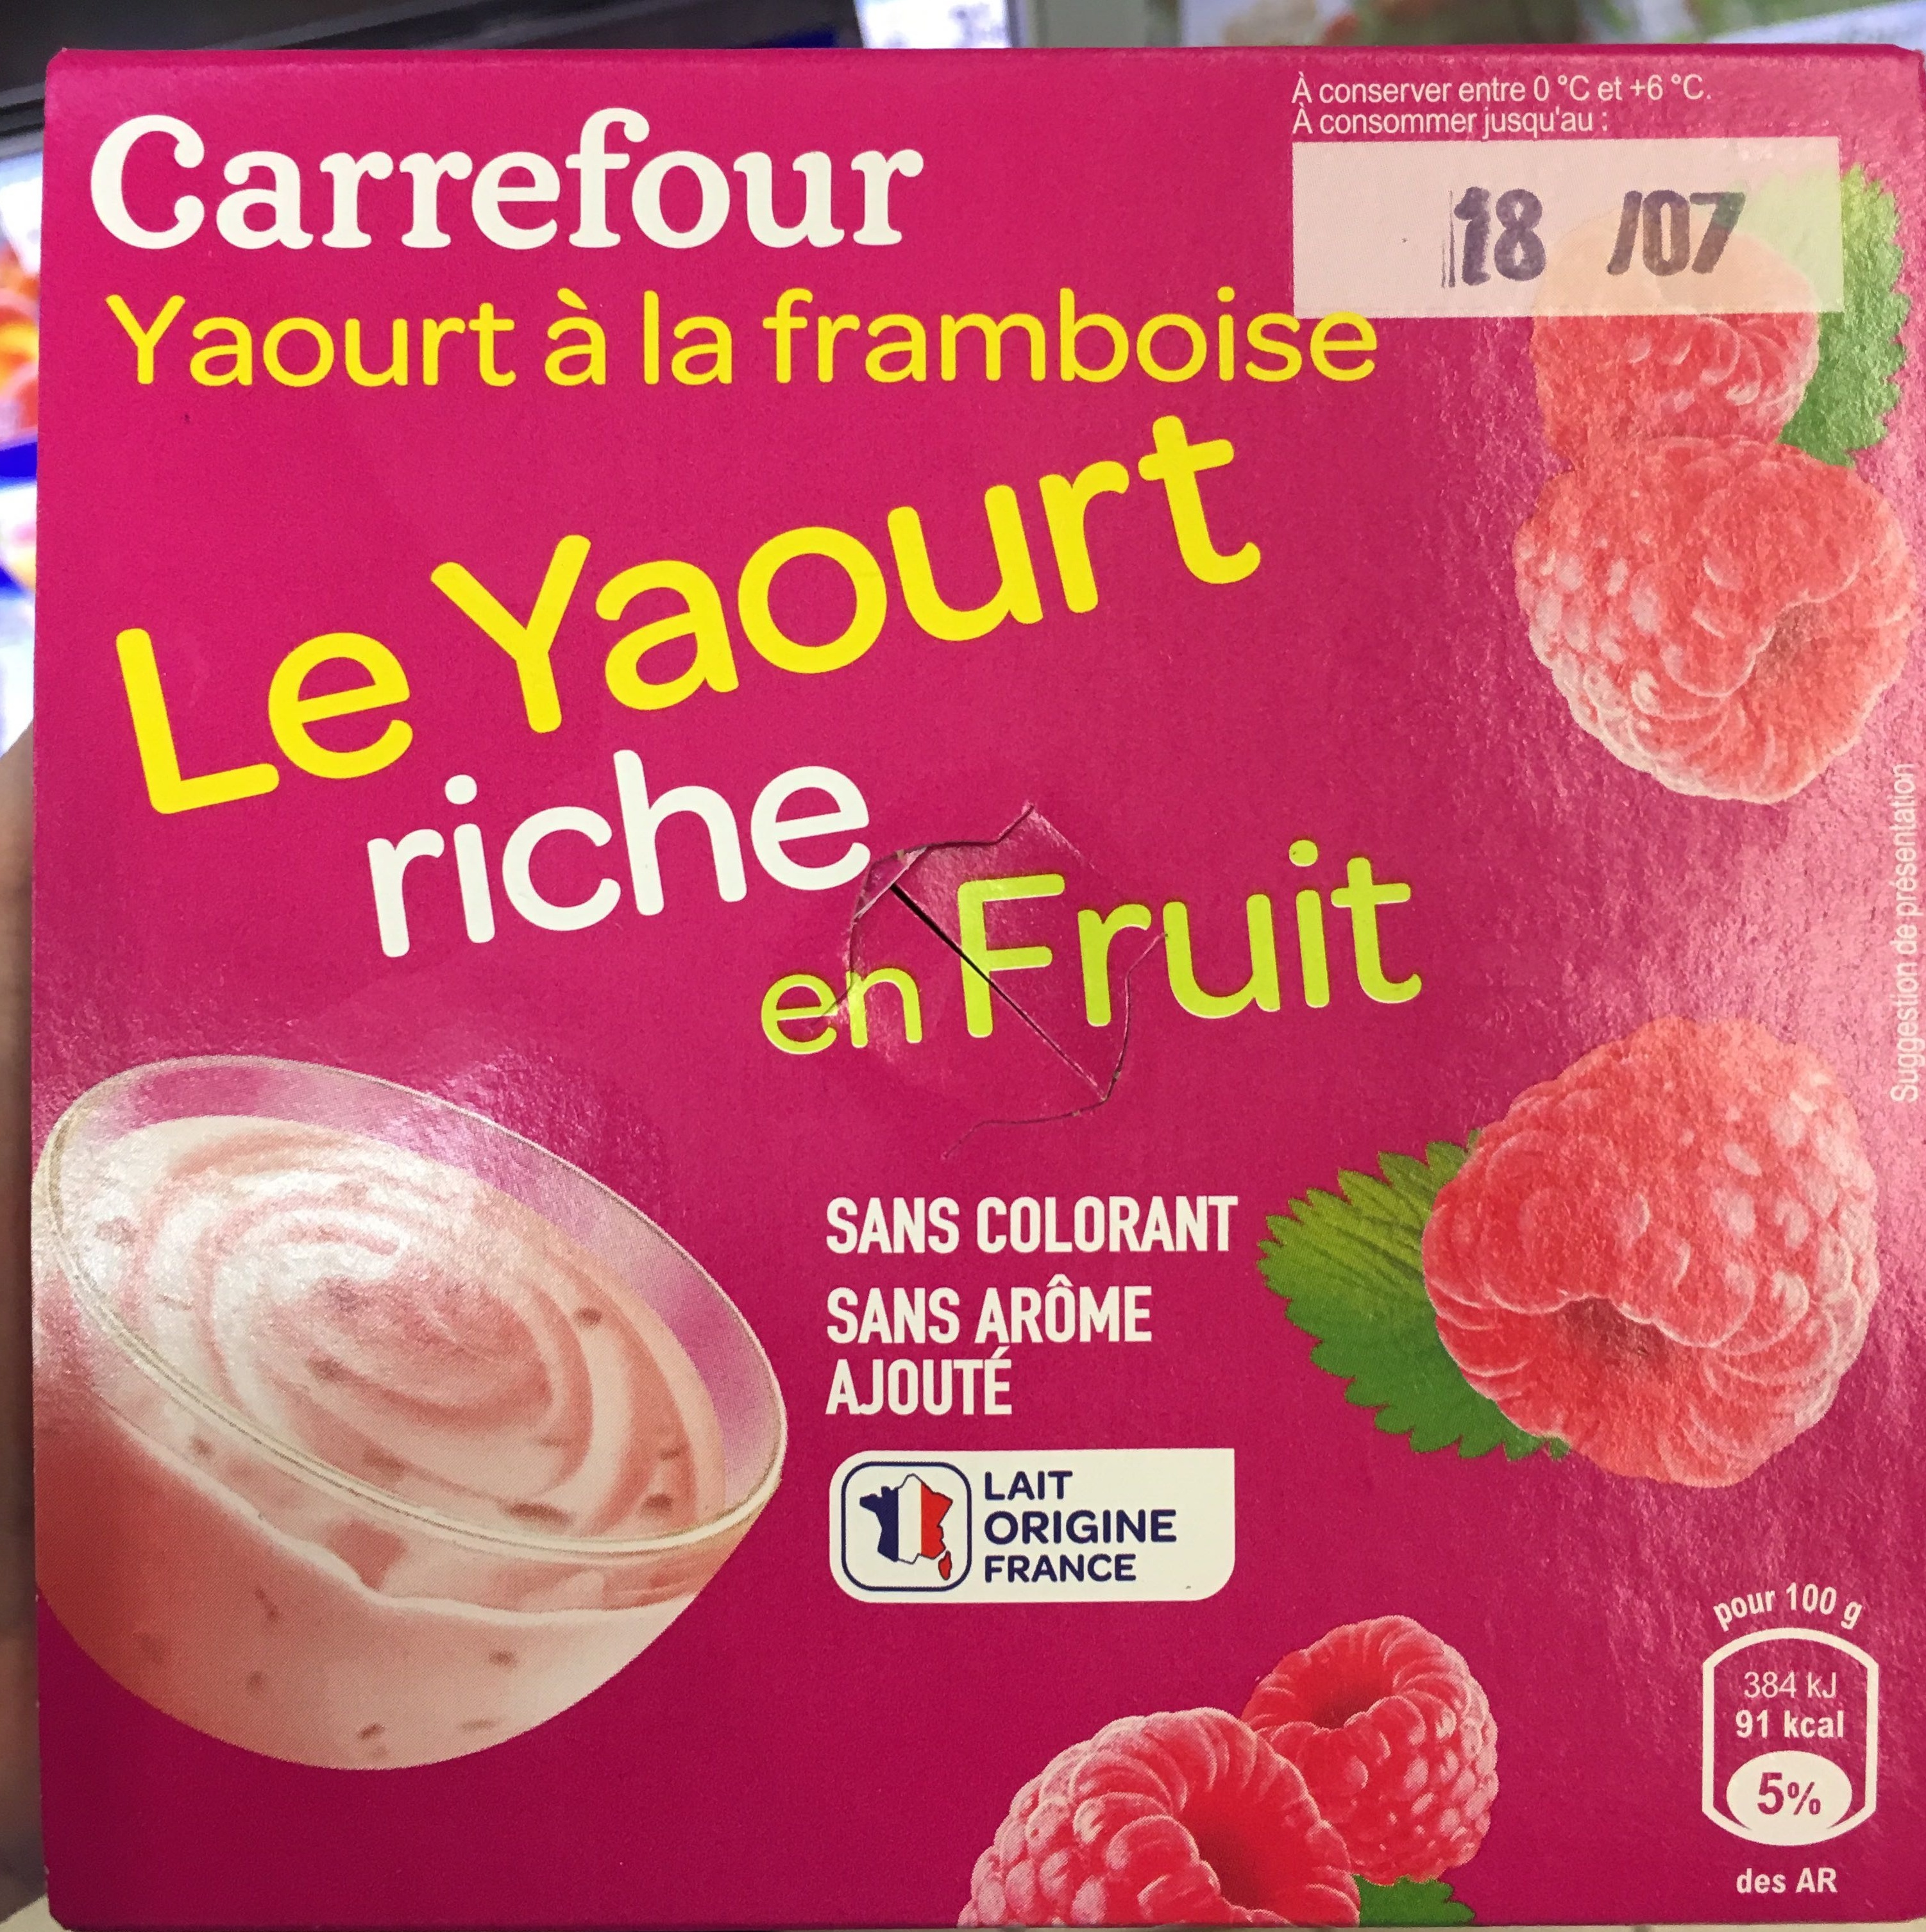 Le Yaourt riche en Fruit Framboise - Product - fr